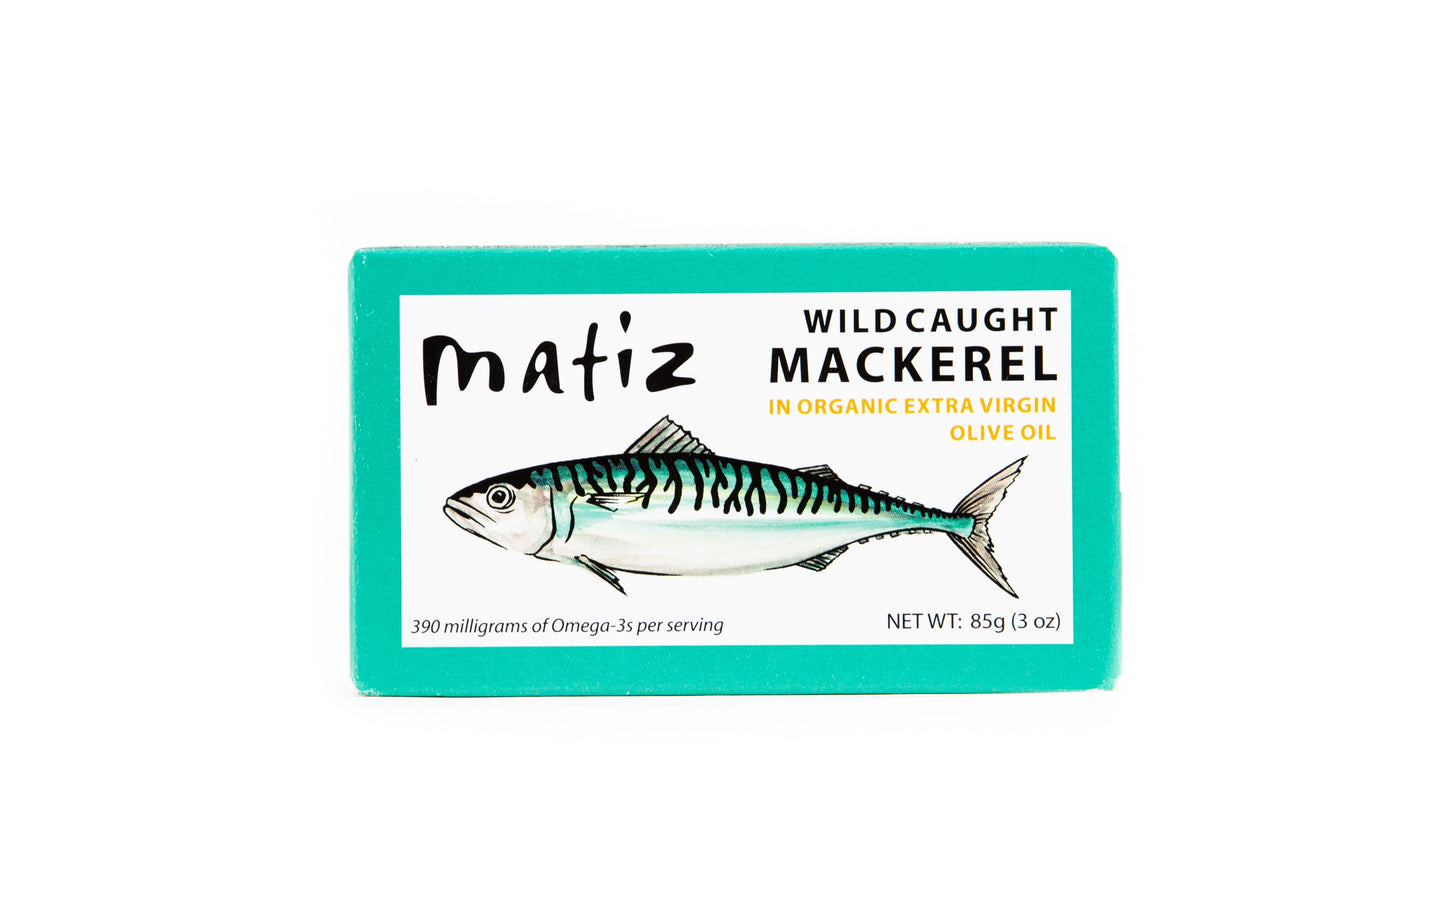 Matiz - Mackerel - Spain